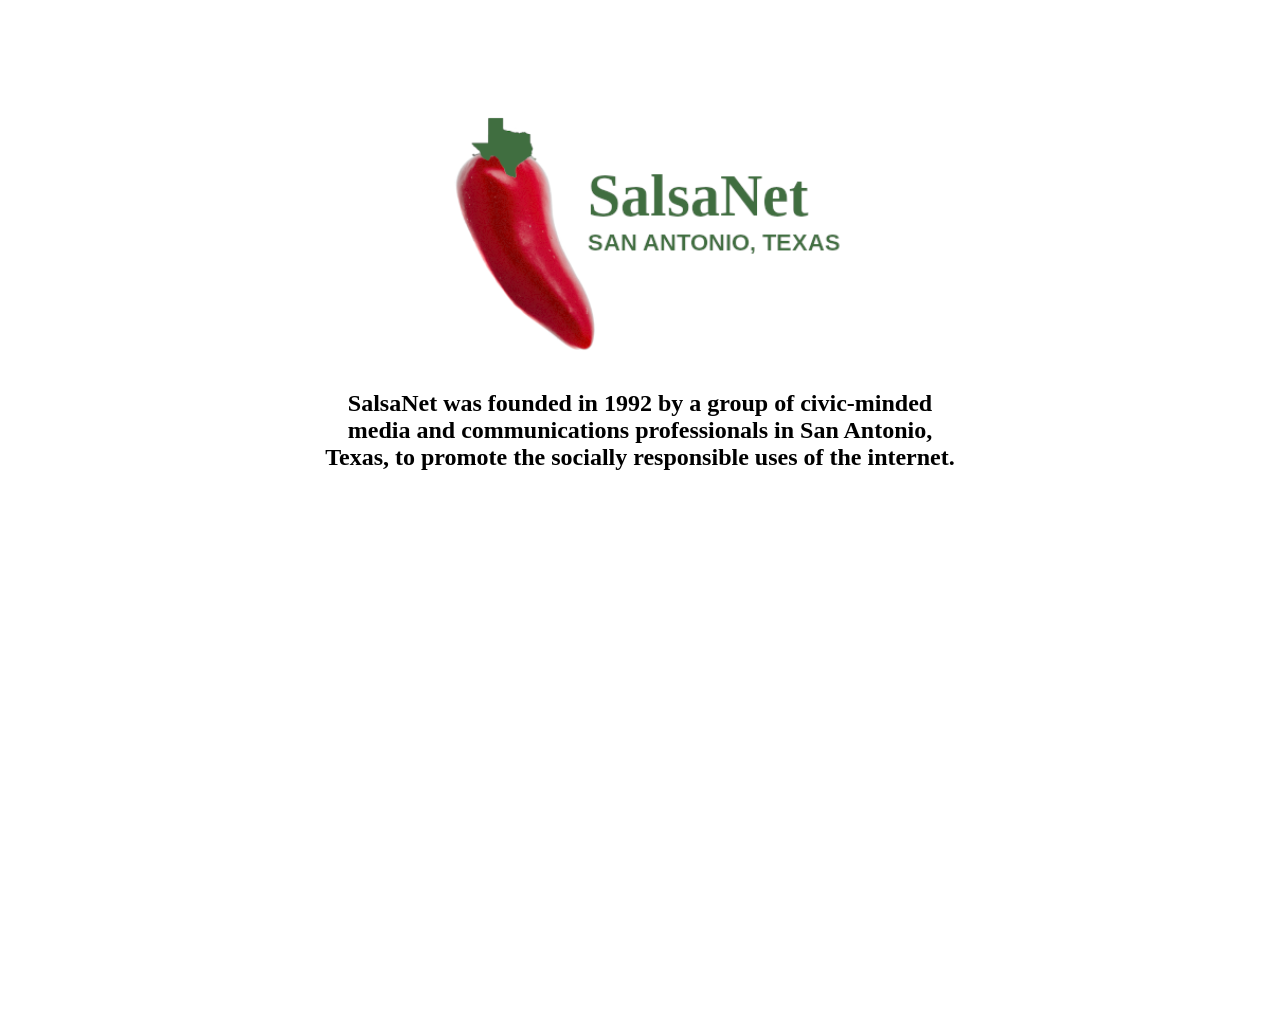 salsa.net